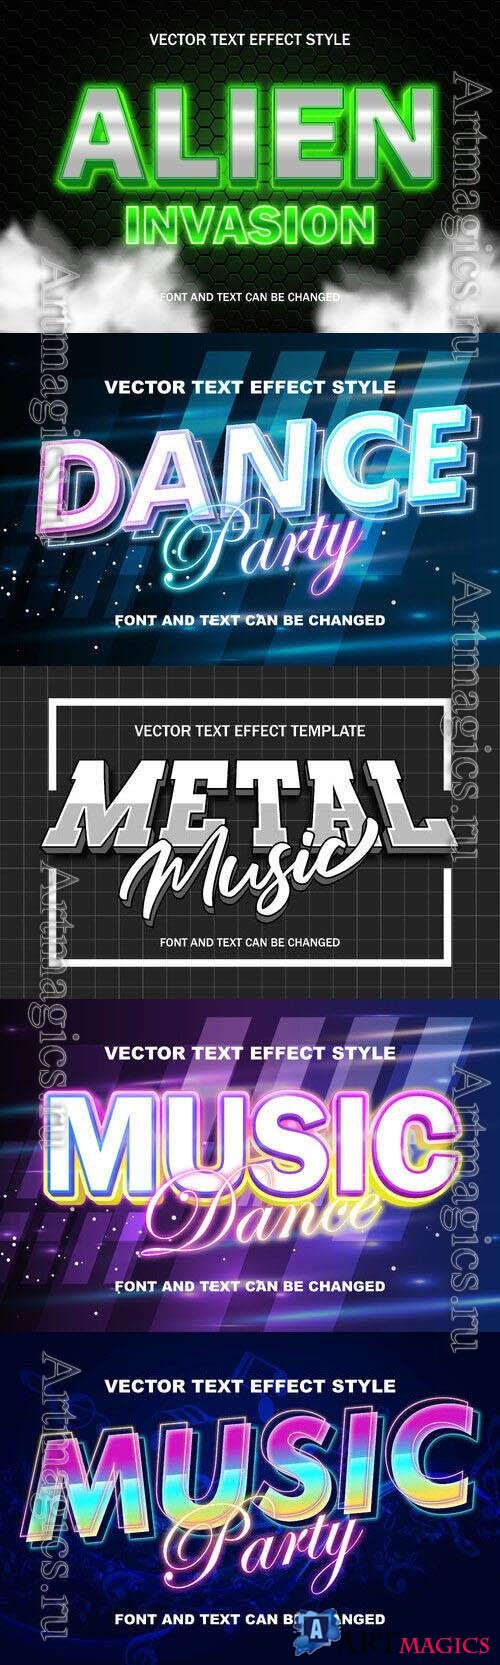 Vector 3d text editable, text effect font design
 set vol 70